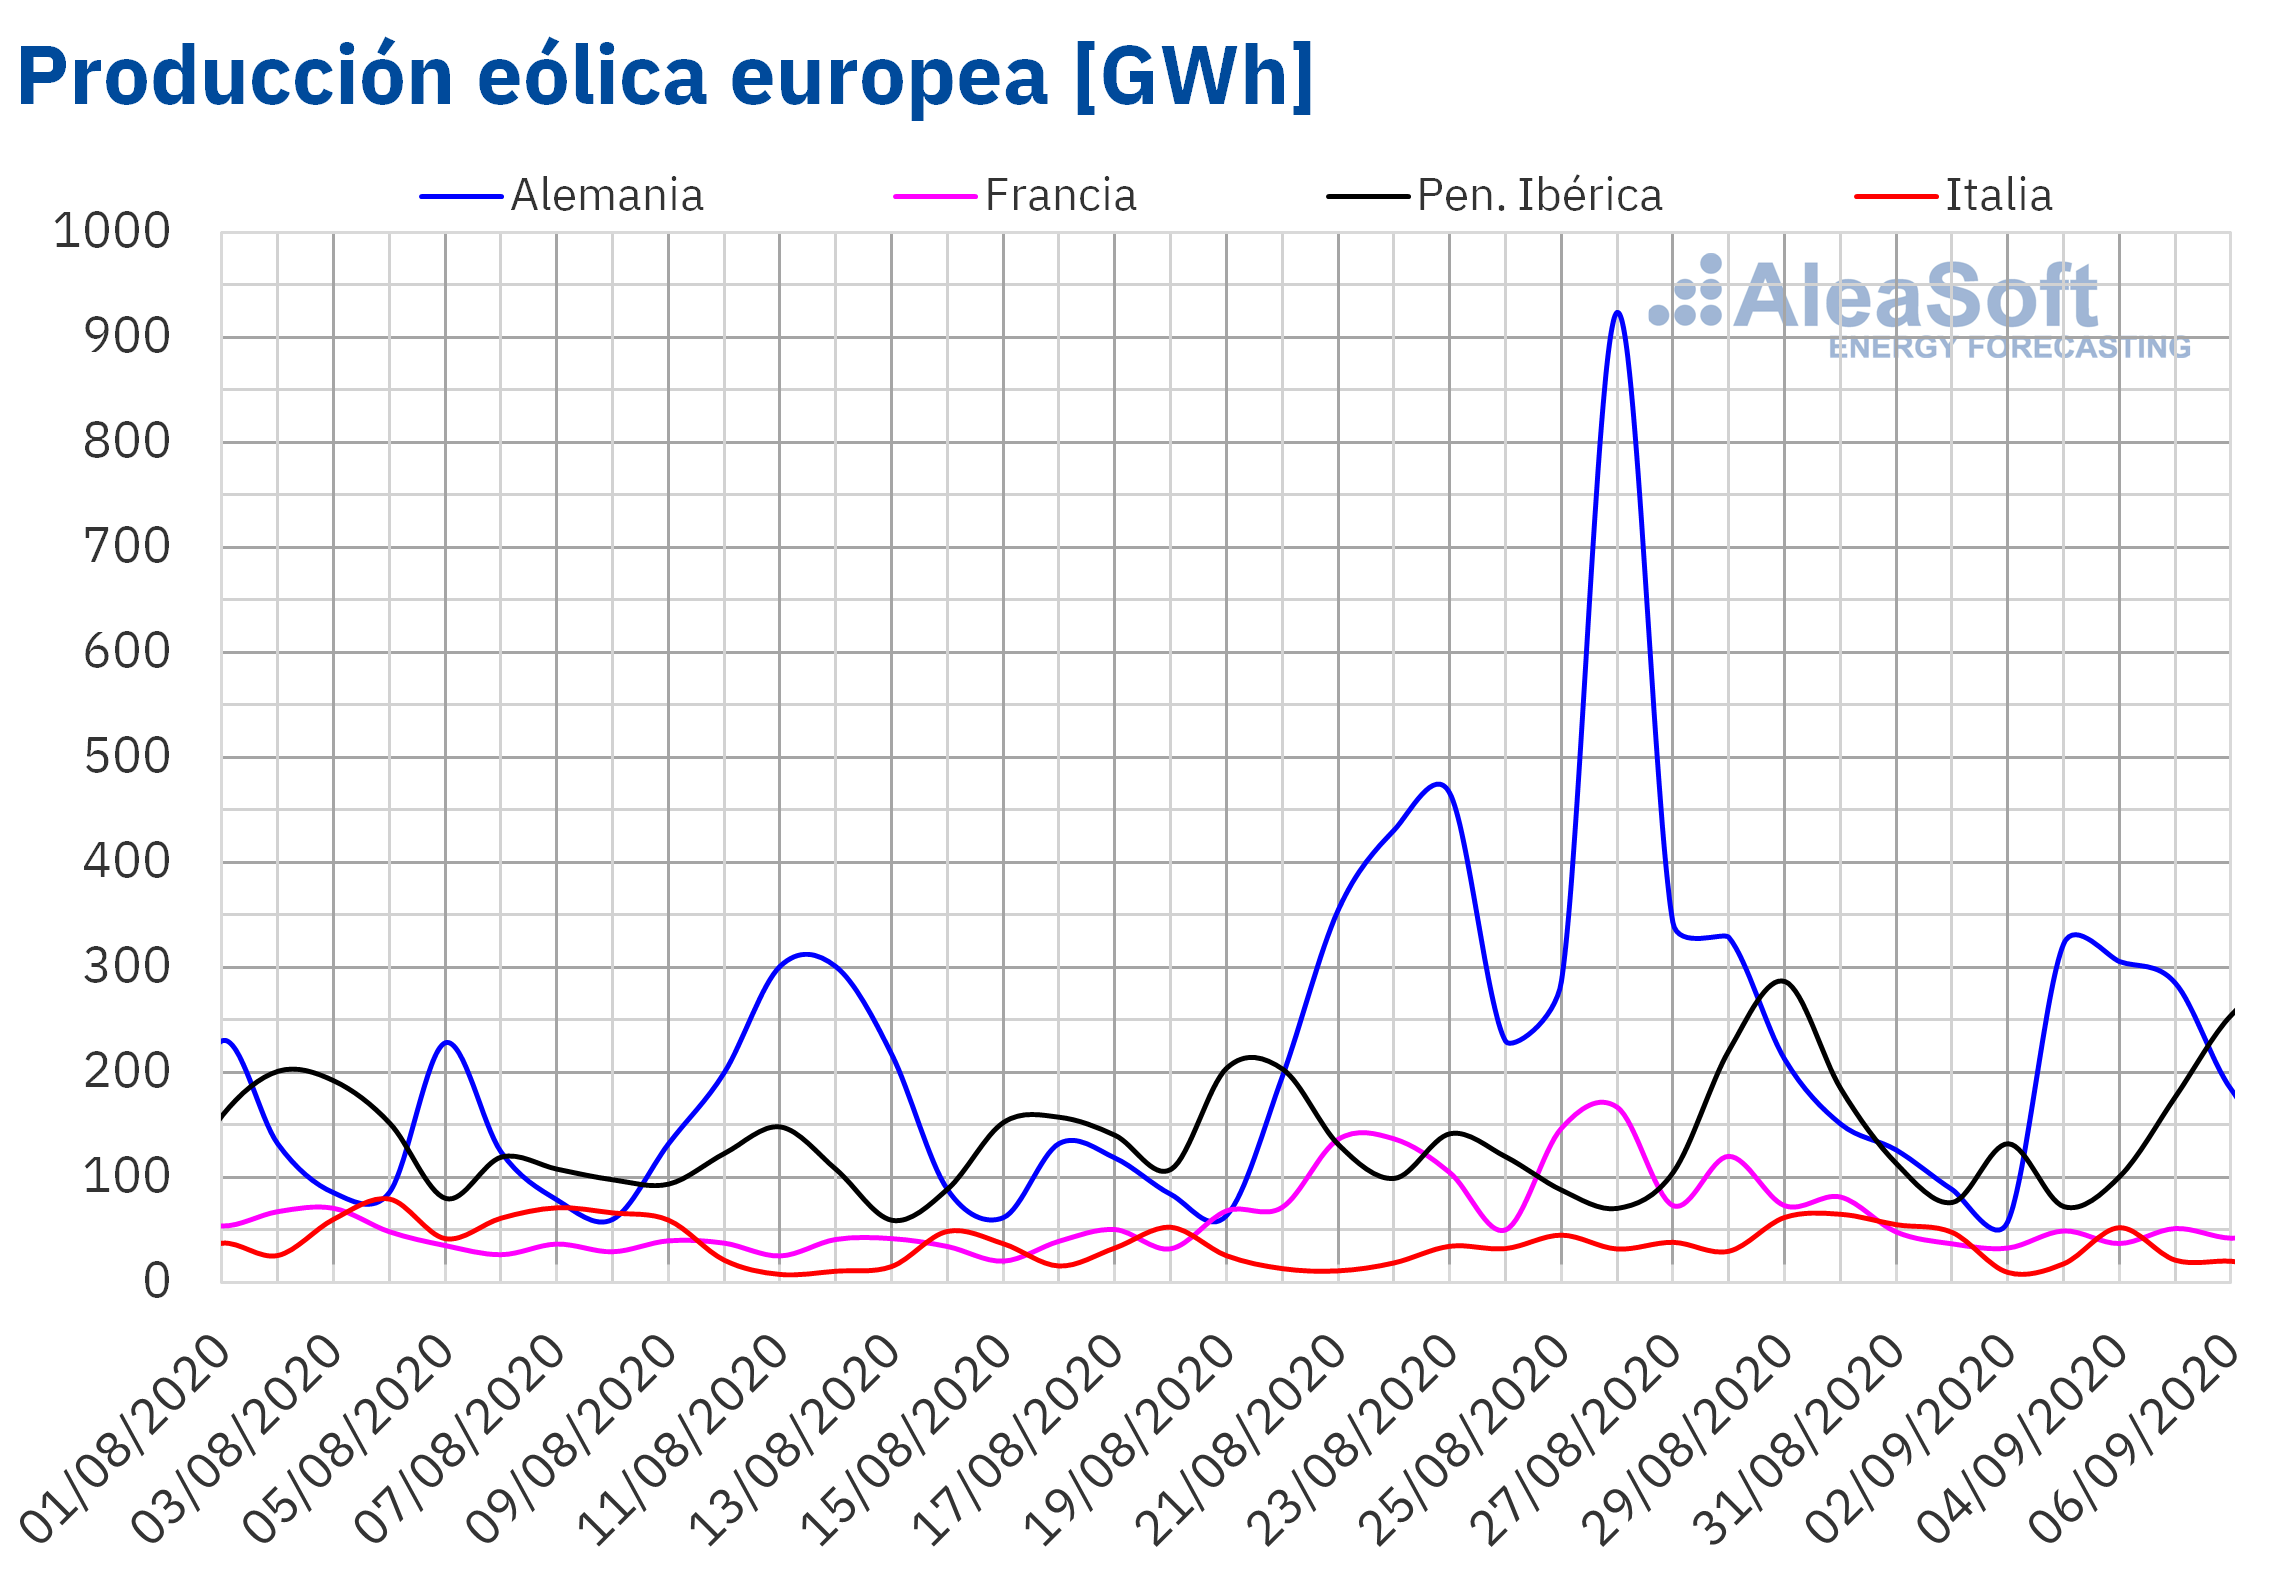 AleaSoft - Producción eólica de electricidad Europea